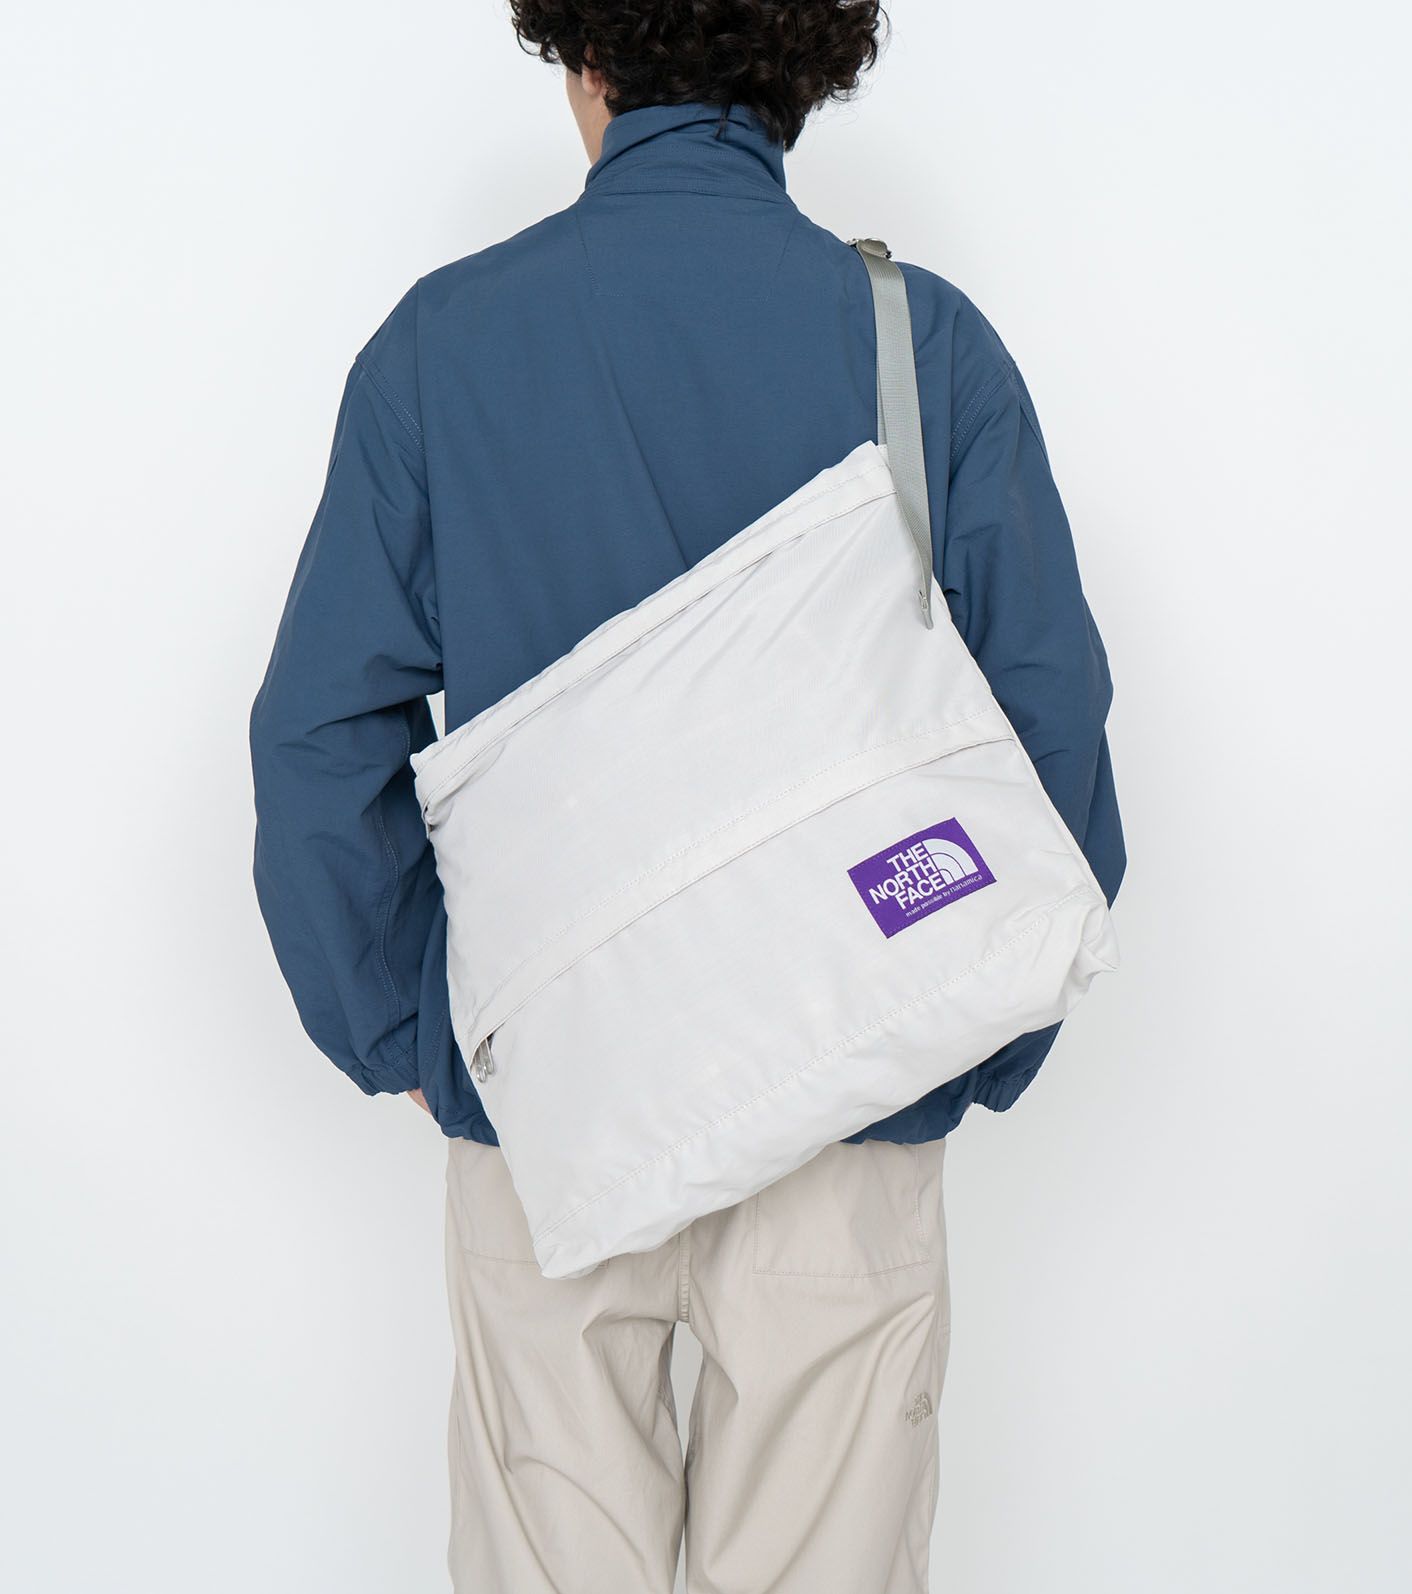 Field Shoulder Bag